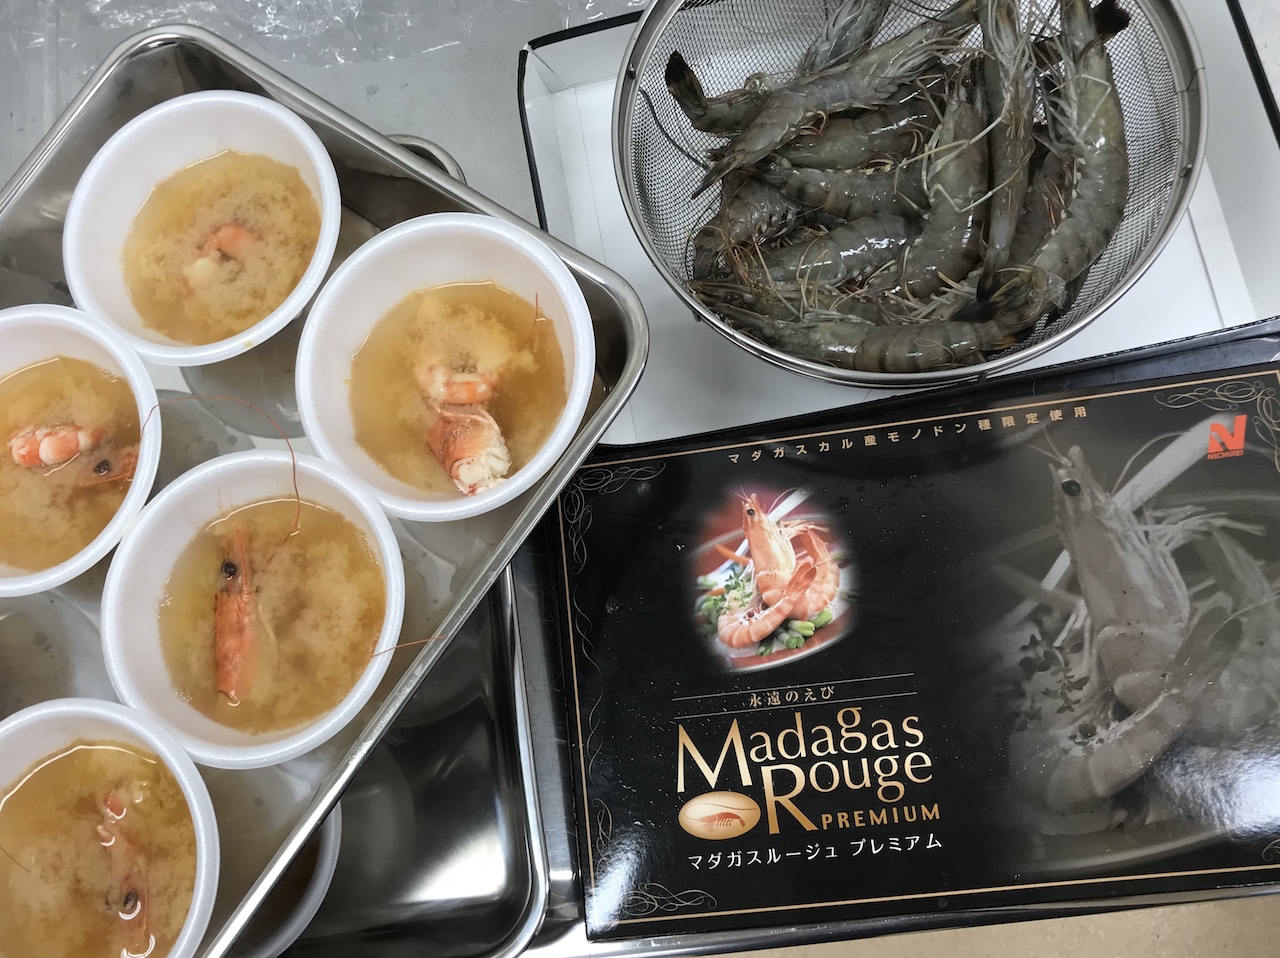 タイ・ブリを試食しエビは味噌汁でいただく「おさかな学習会」、豊洲市場おいしい土曜マルシェ3/23に開催